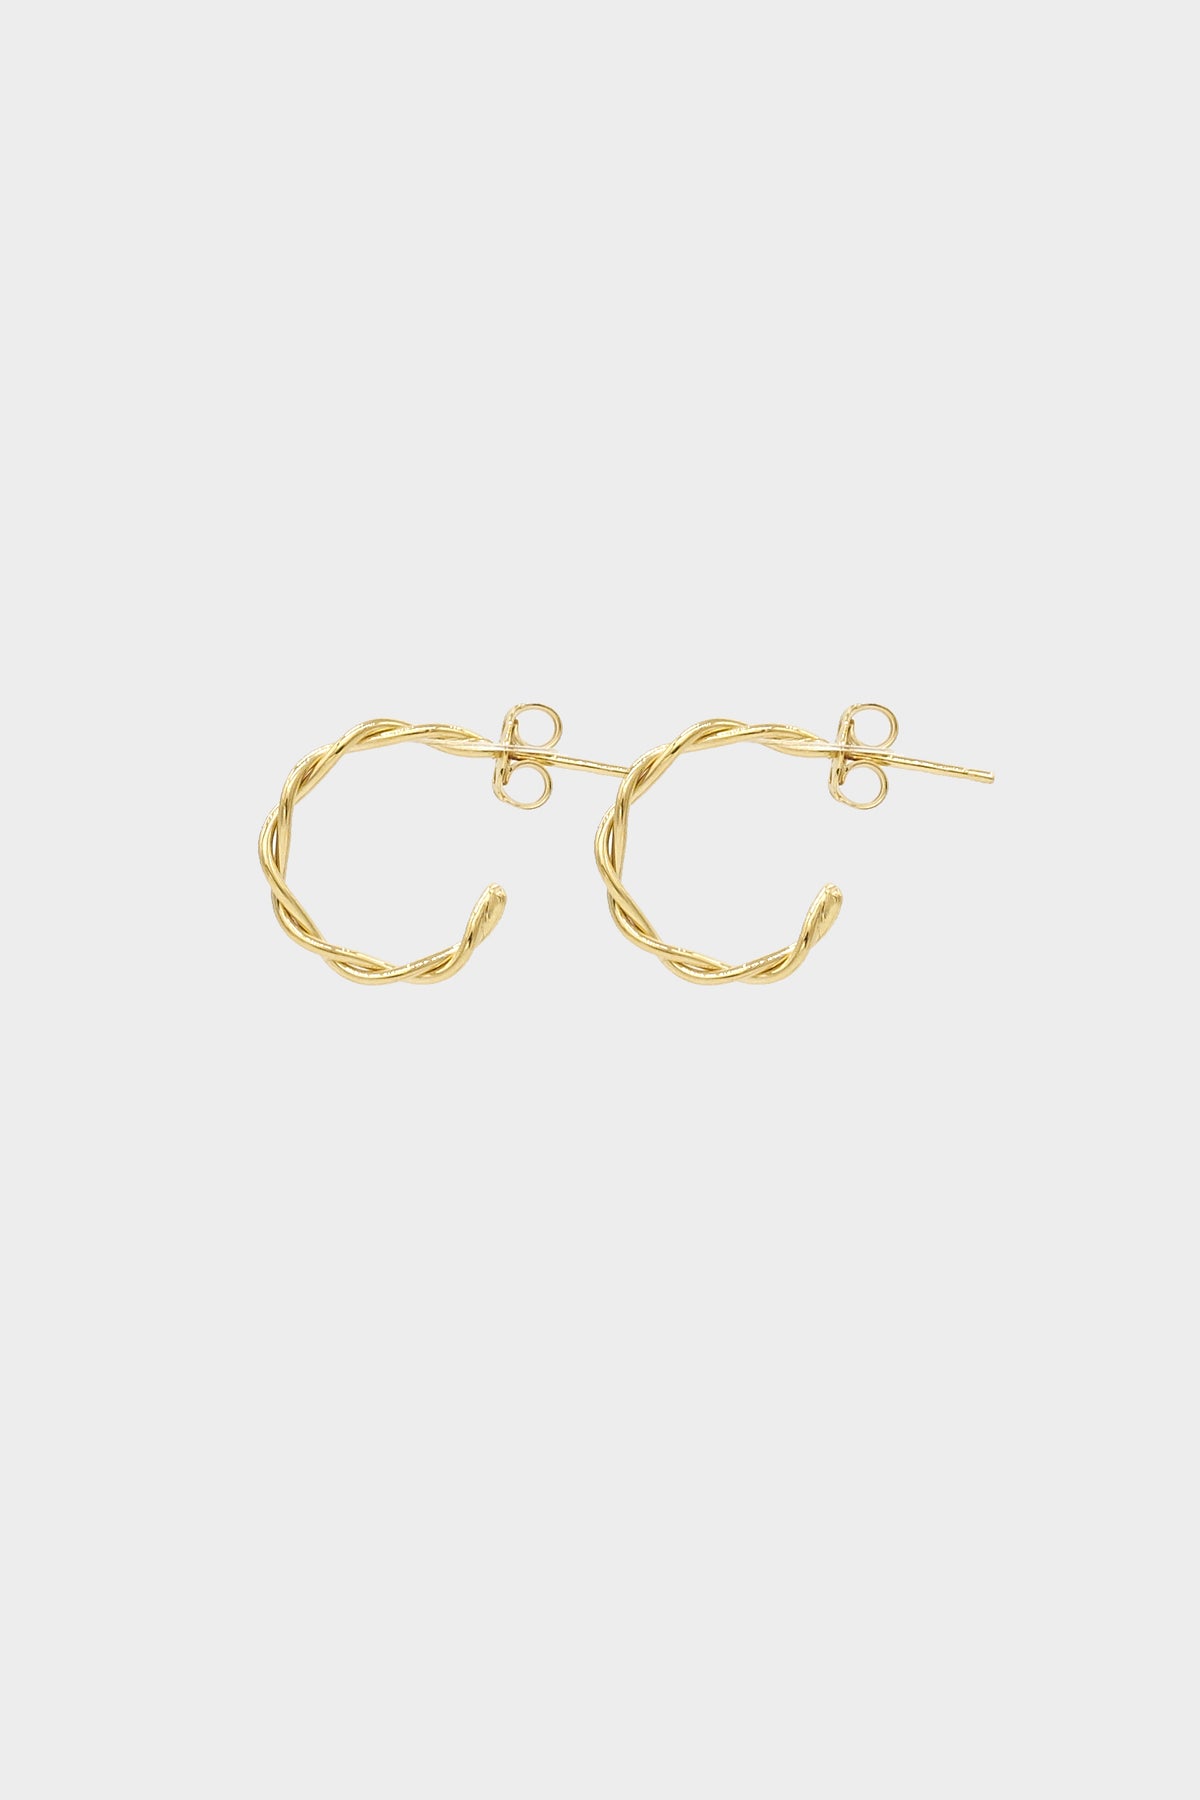 NATASHA SCHWEITZER | Earrings | Helix Earrings Small | 9K Yellow Gold ...